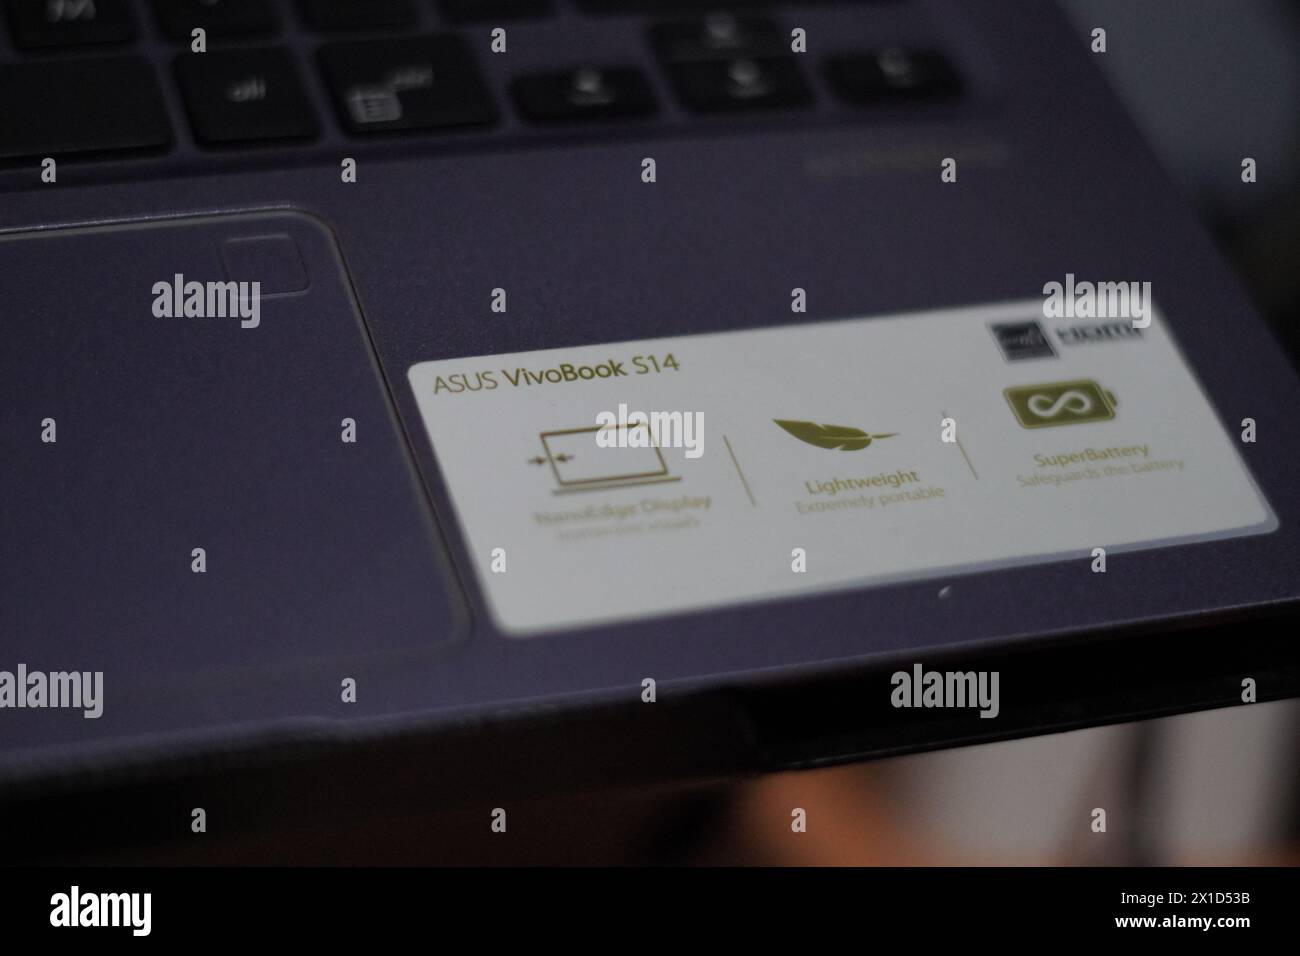 Autocollant Asus VivoBook S14 avec la description nanoedge, léger et super batterie attaché à l'ordinateur portable Banque D'Images